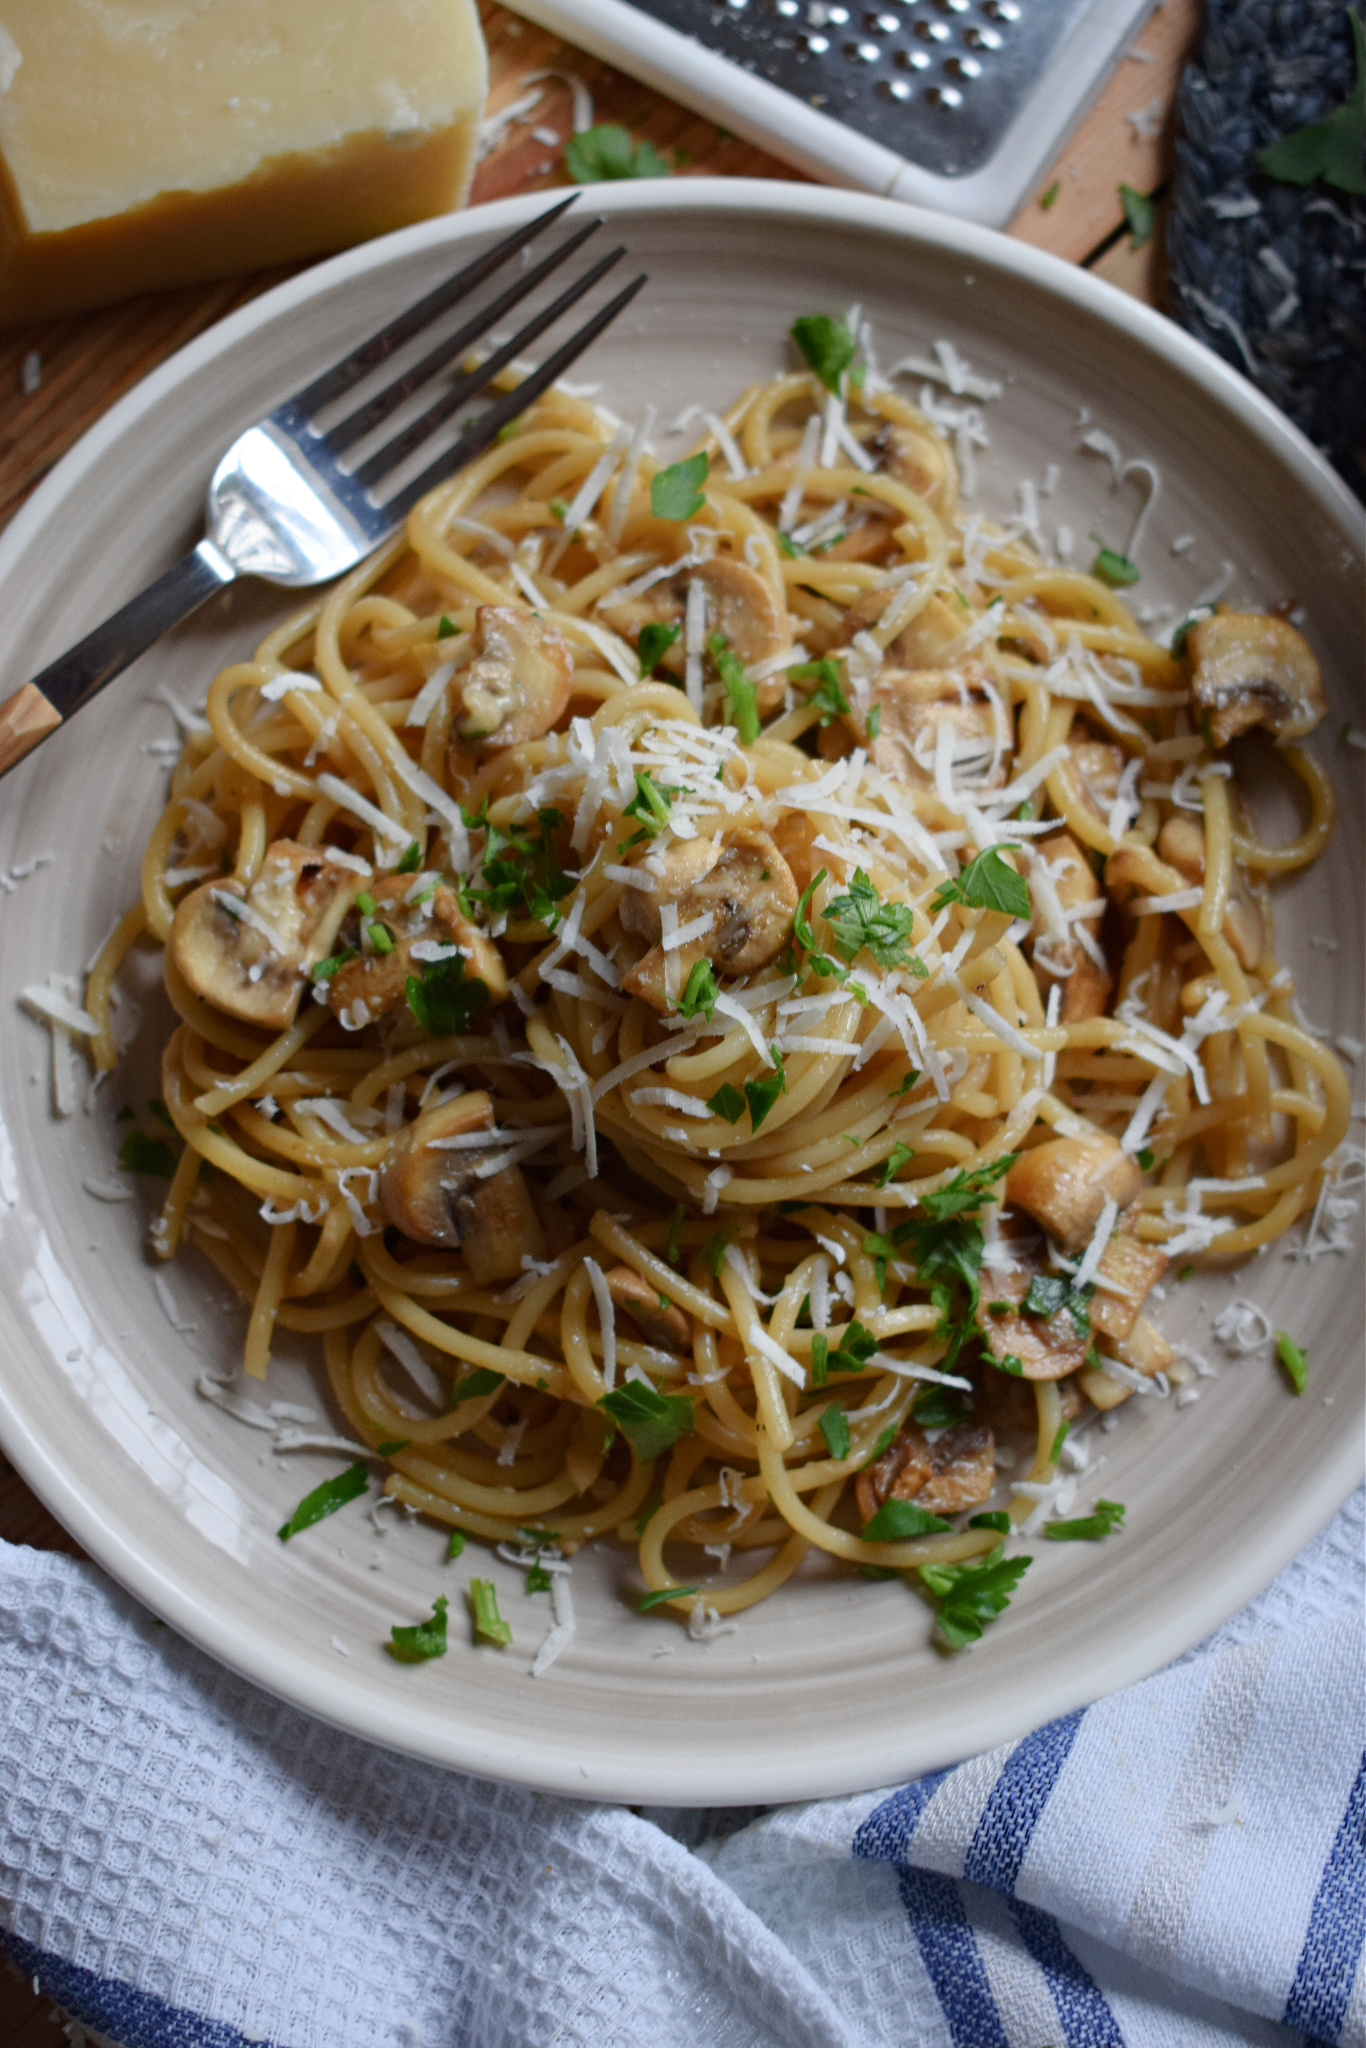  Garlic Mushroom Spaghetti on a plate